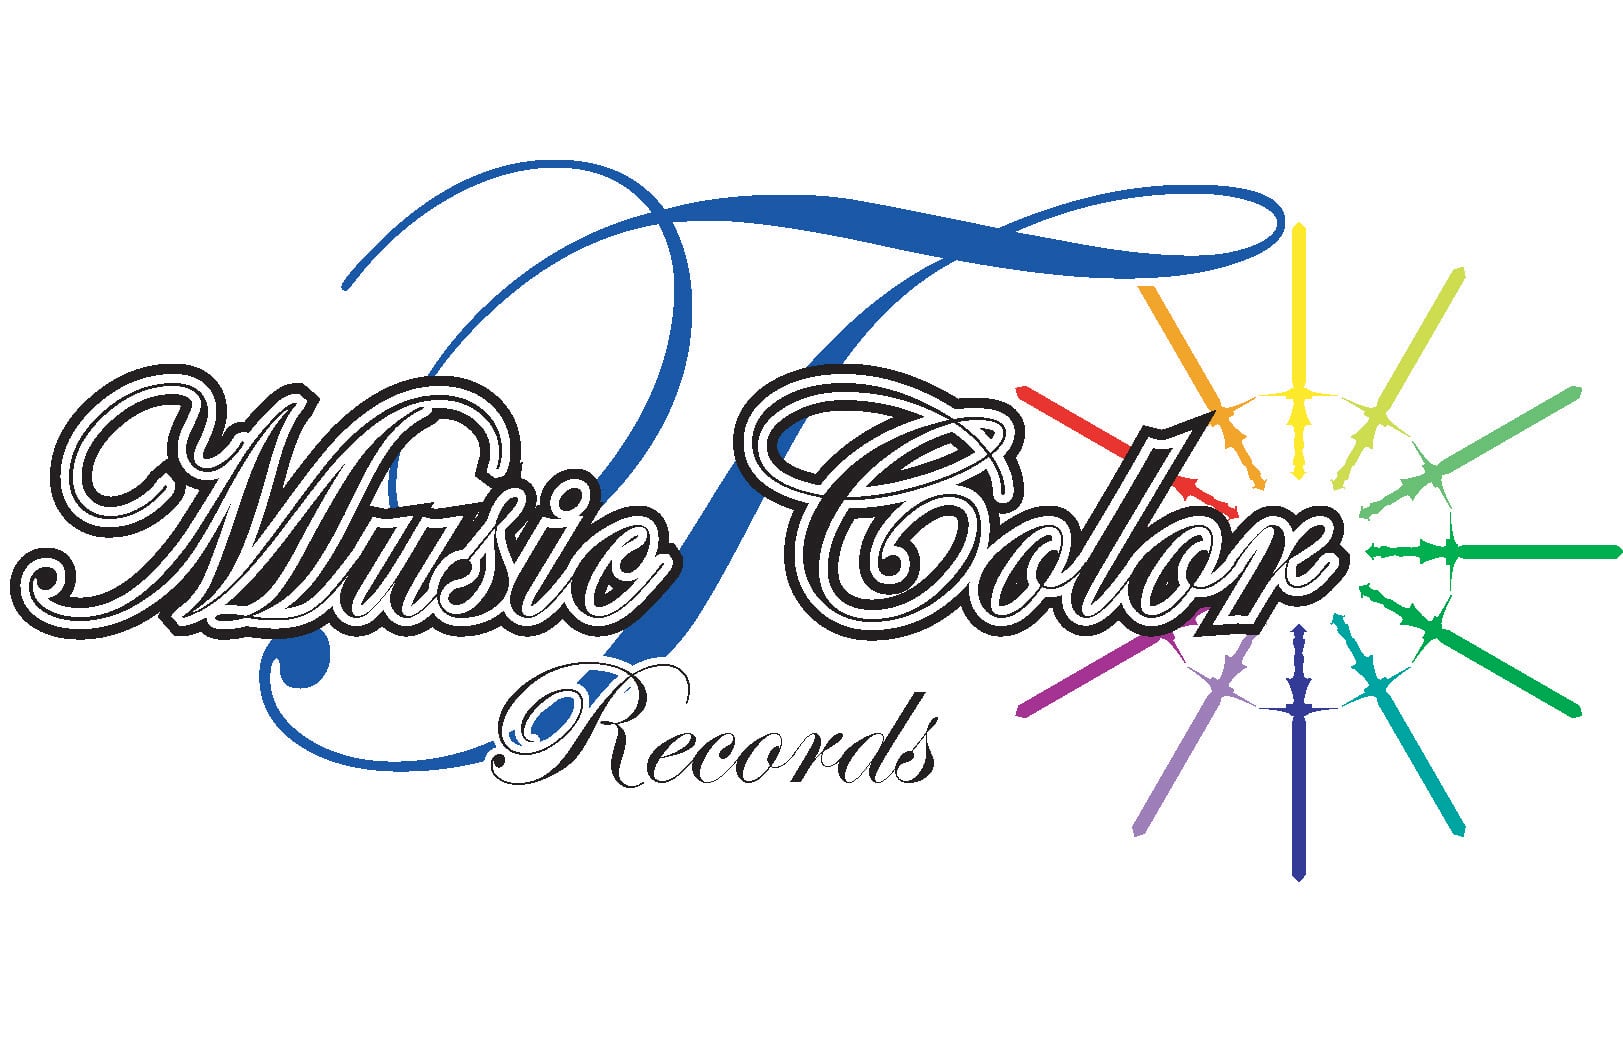 T-Music Color Records Online Shop